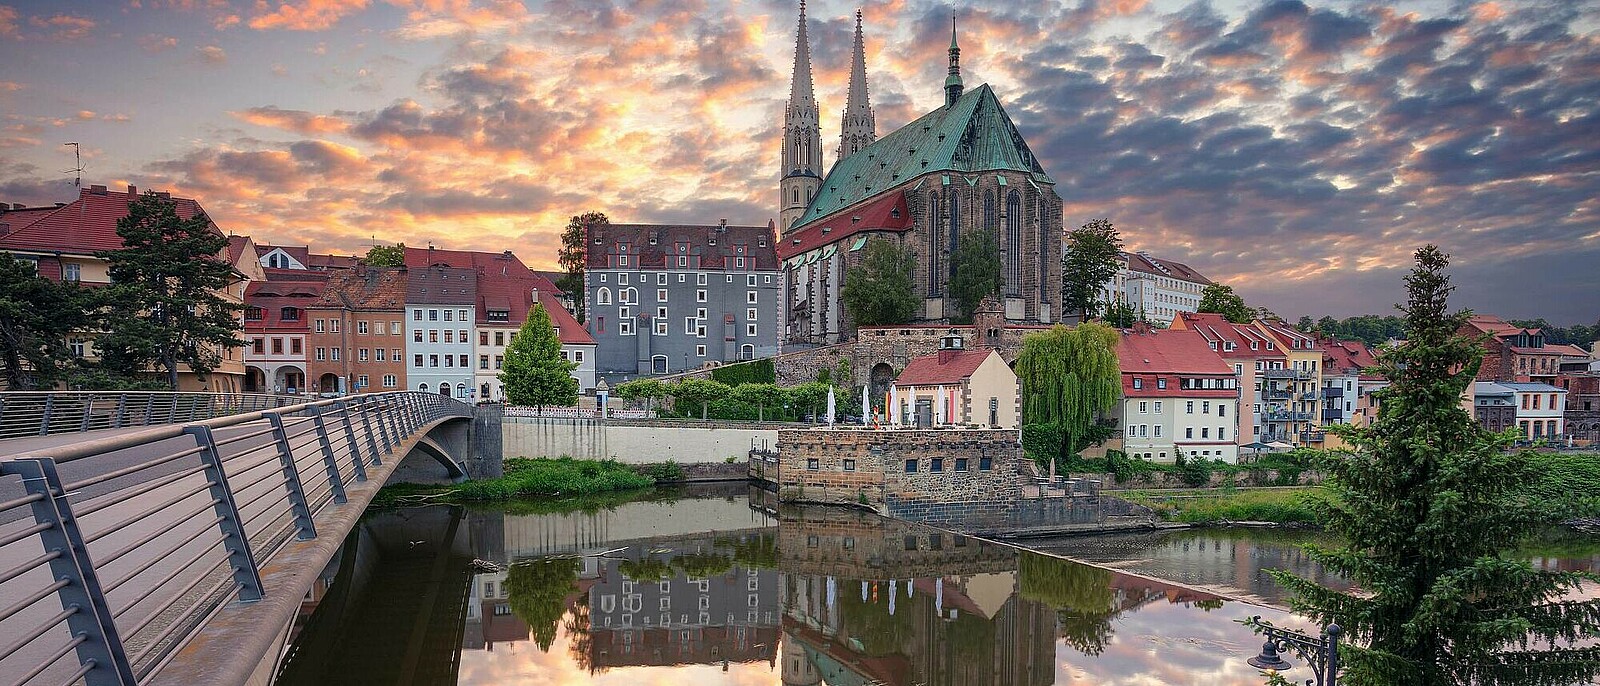 Städtereise Görlitz mit flexibel gestaltbarem Ausflugsprogramm und Möglichkeit zur individuellen Erkundung der vielen kulturellen Highlights.